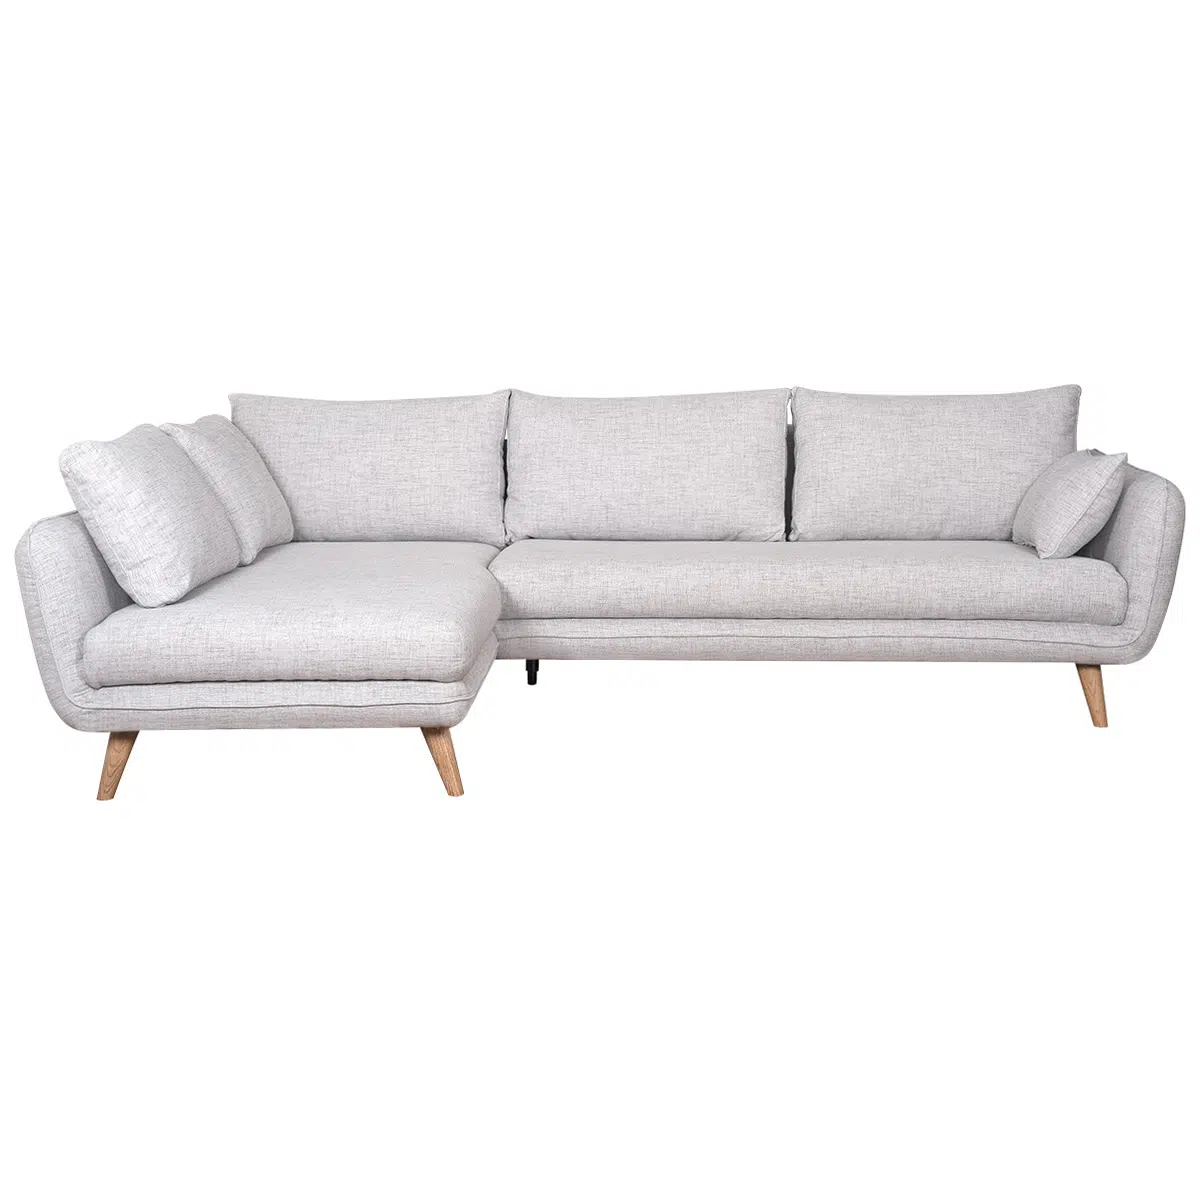 Canapé d'angle gauche scandinave 5 places en tissu gris clair chiné et bois clair CREEP